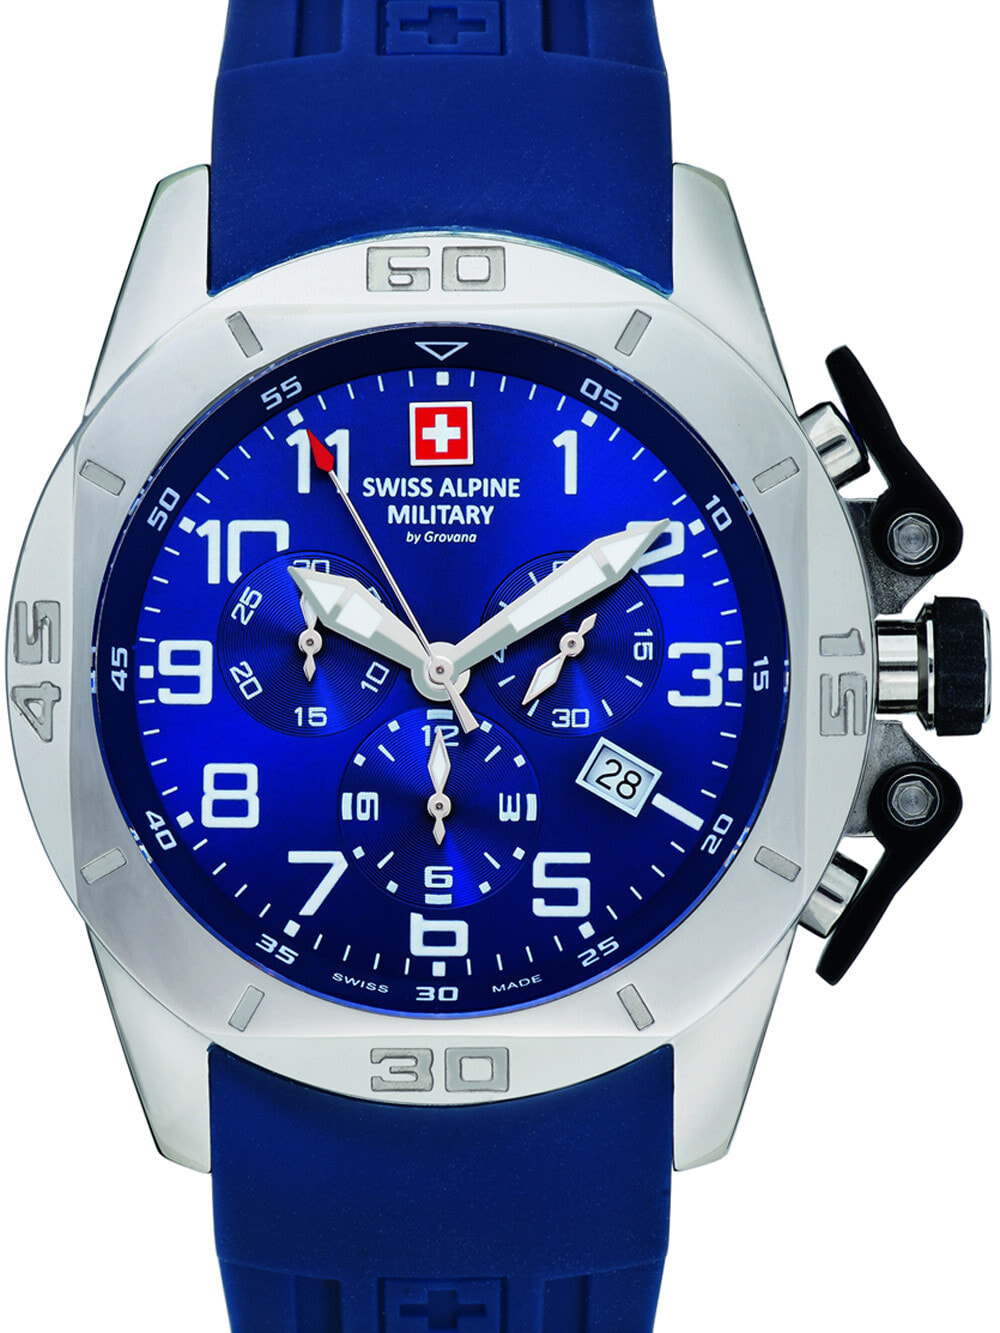 Мужские наручные часы с синим силиконовым ремешком Swiss Alpine Military 7063.9835 chrono 45mm 10ATM